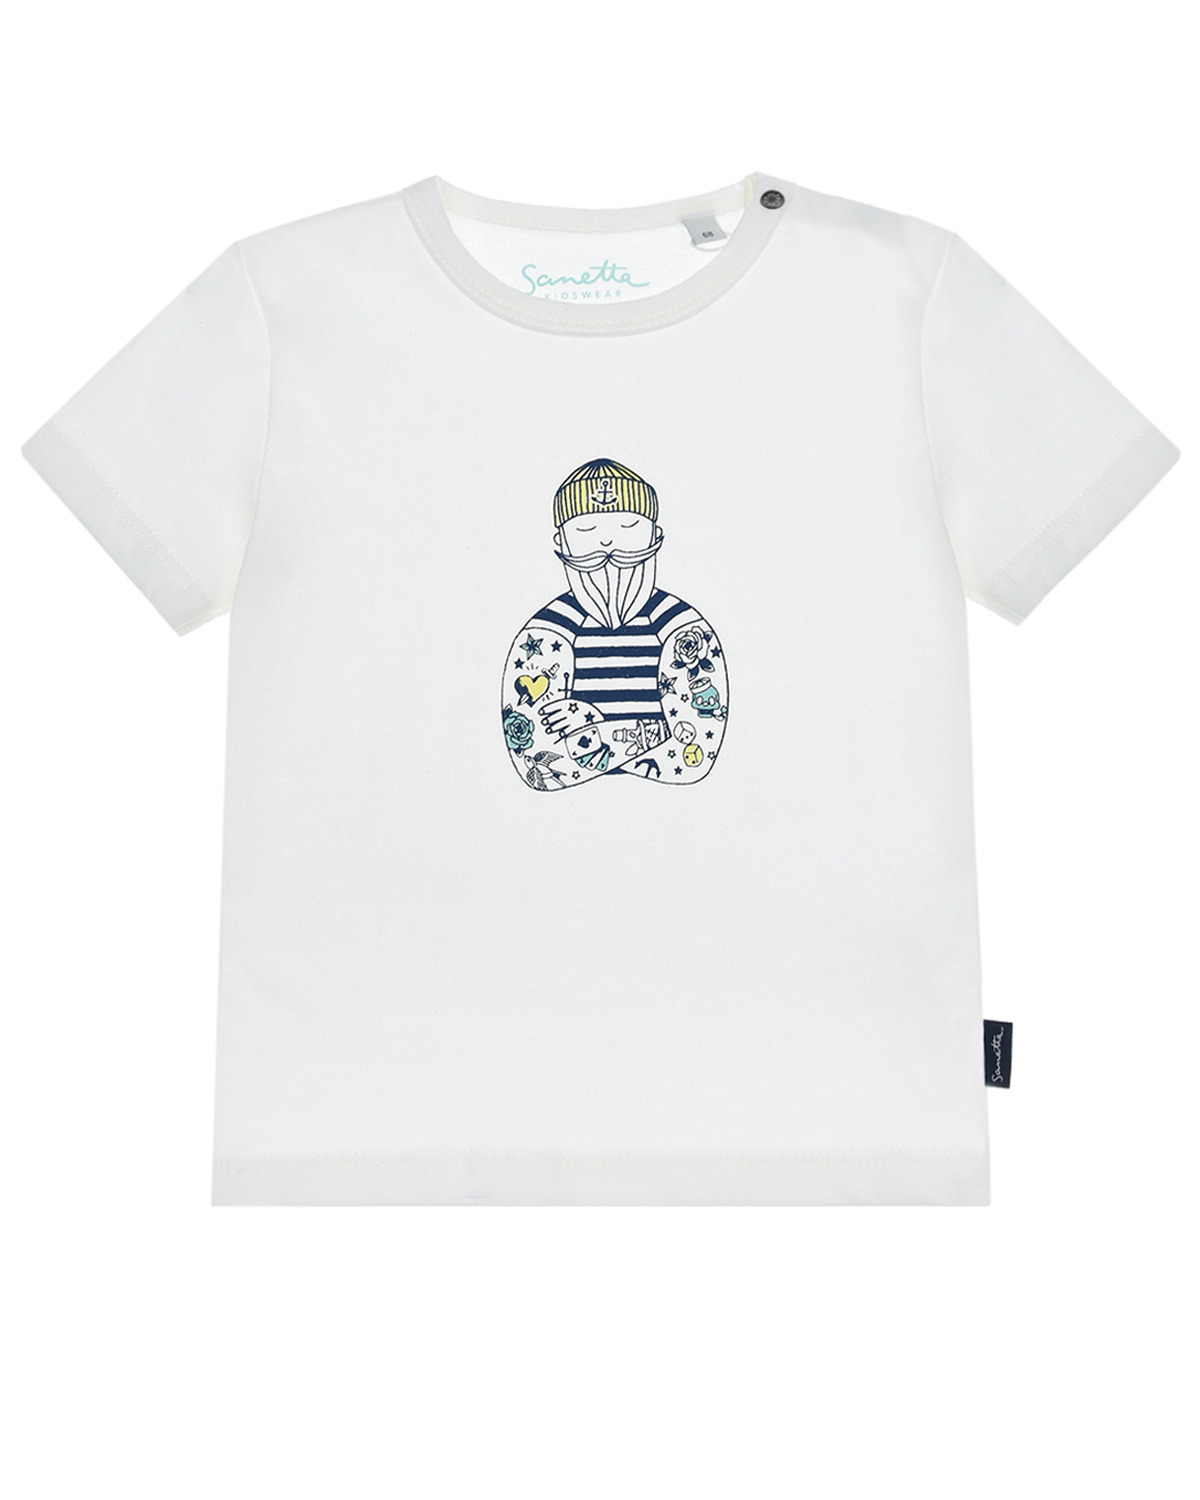 Кремовая футболка с принтом "моряк" Sanetta Kidswear детская, размер 68, цвет кремовый - фото 1